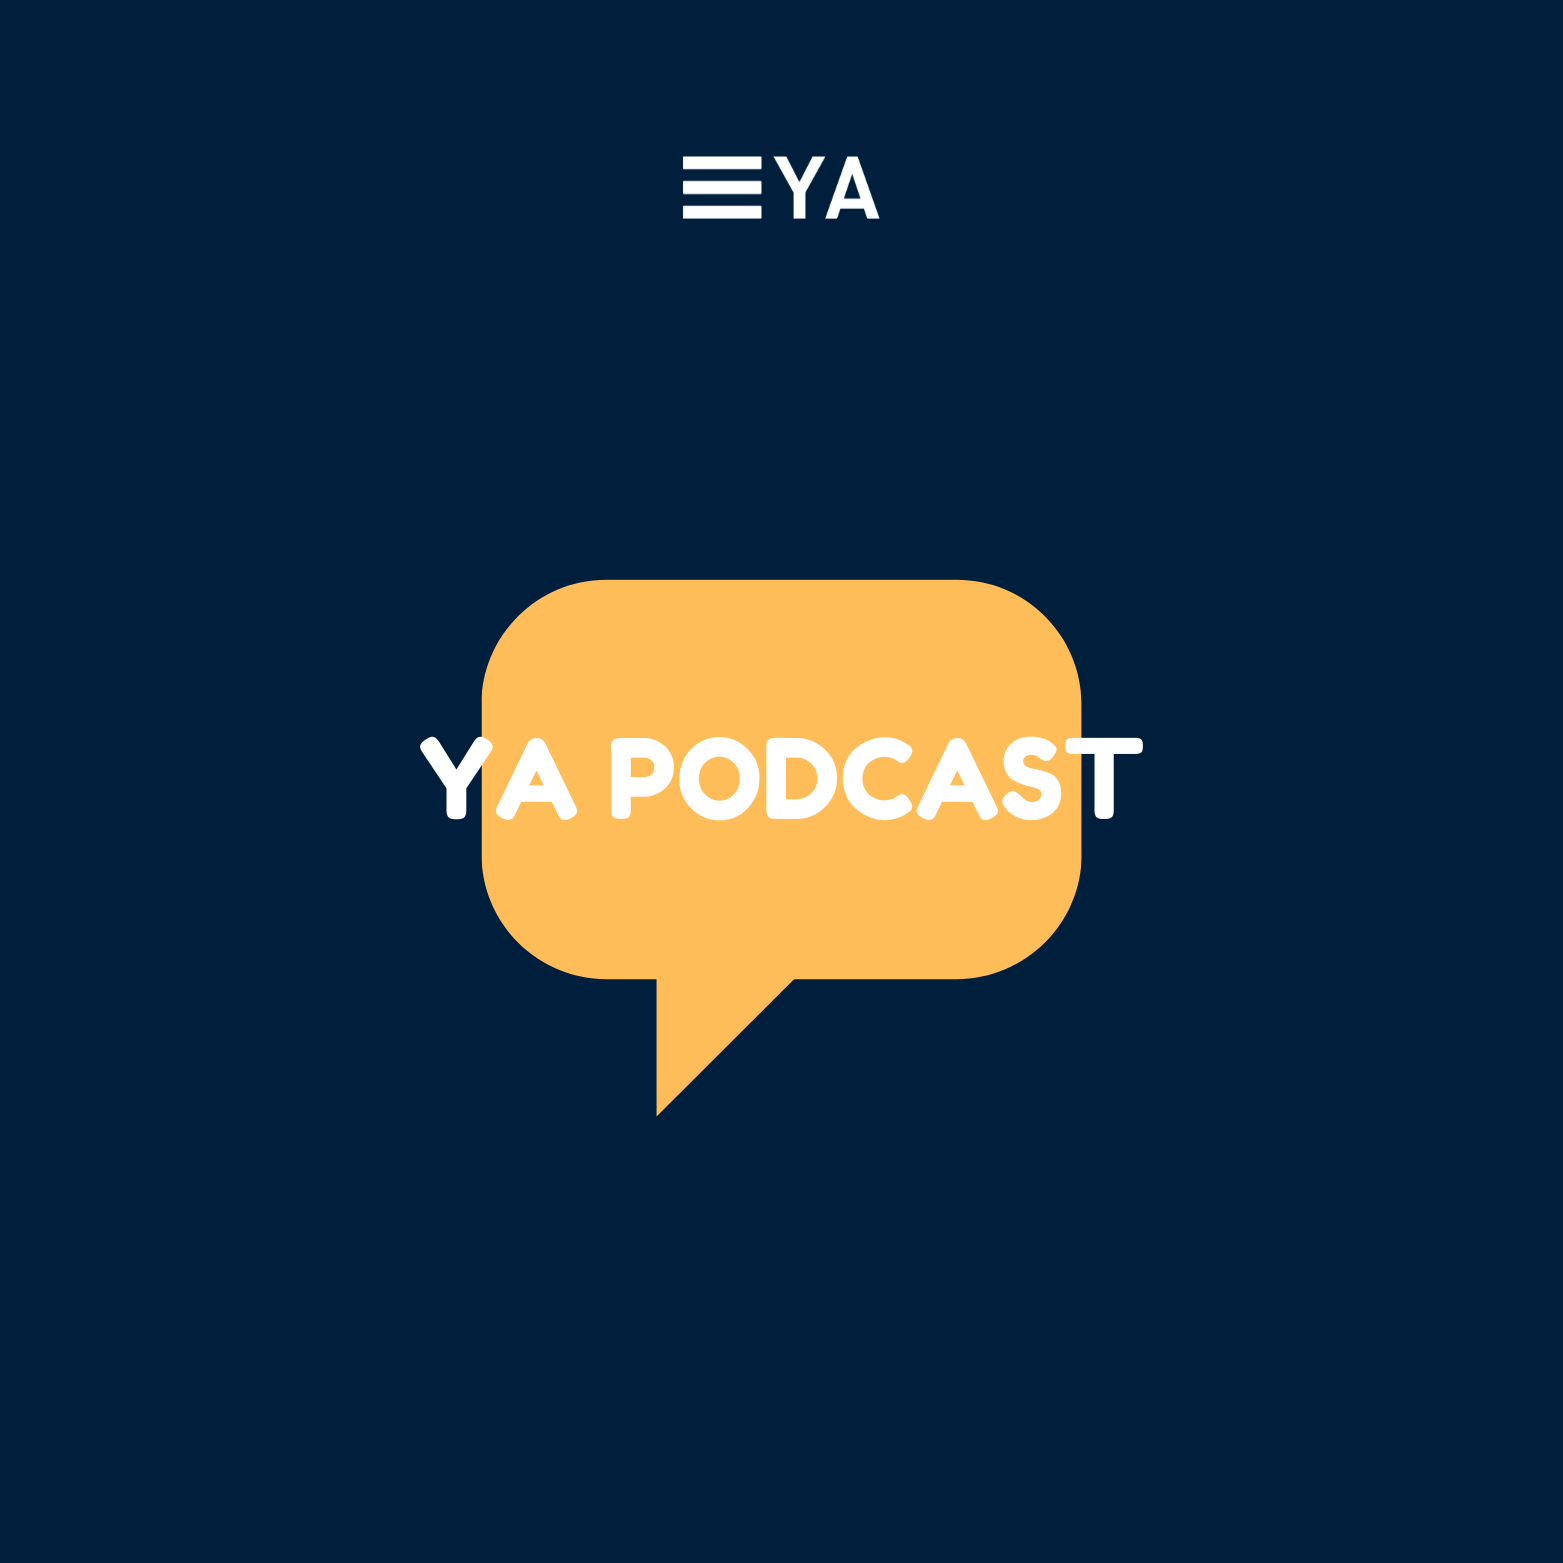 The YA Podcast